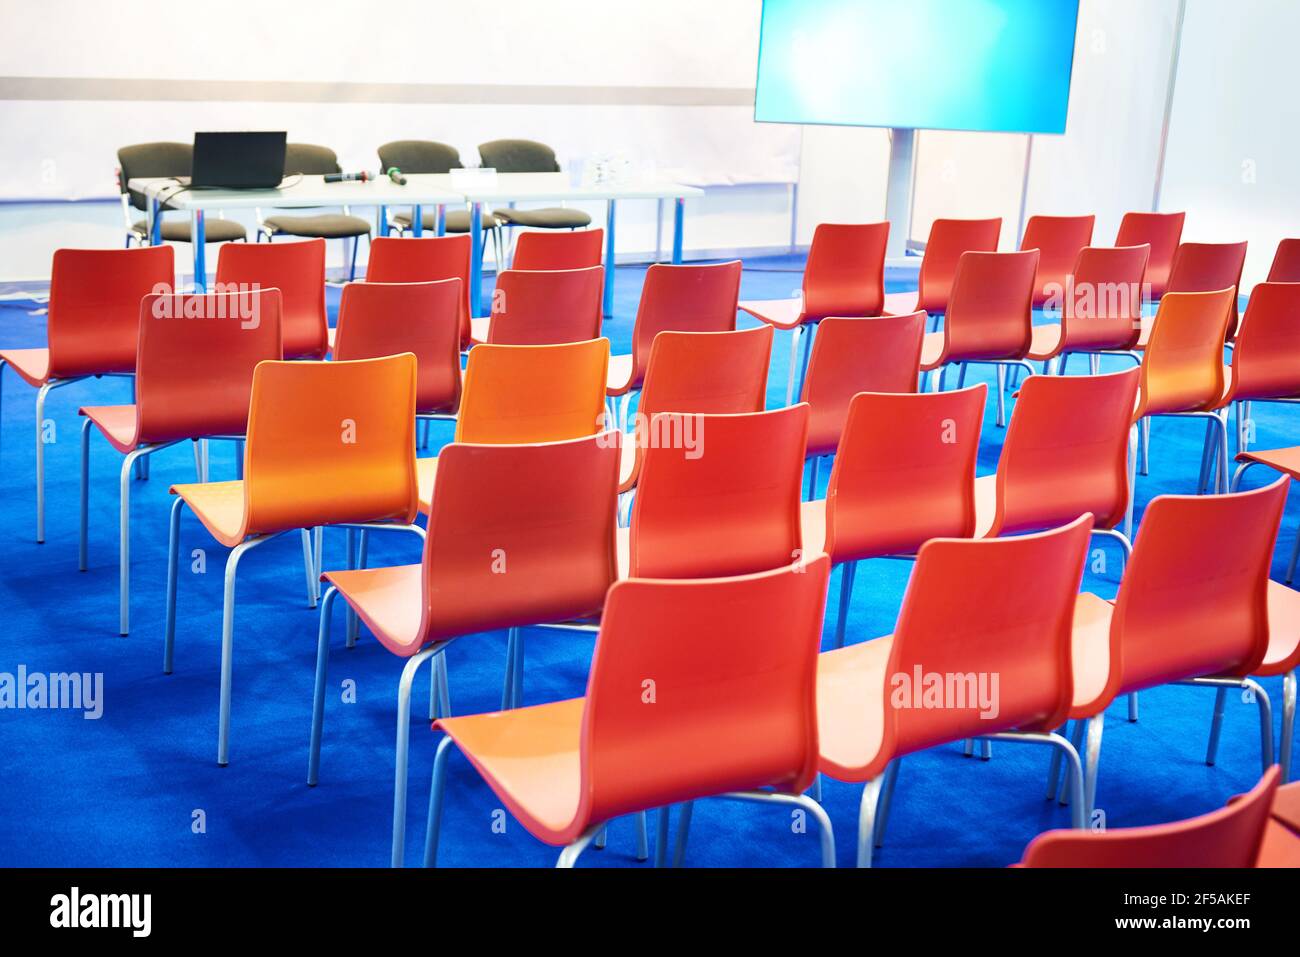 Sillas blancas de la moderna sala de conferencias de negocios Foto de stock